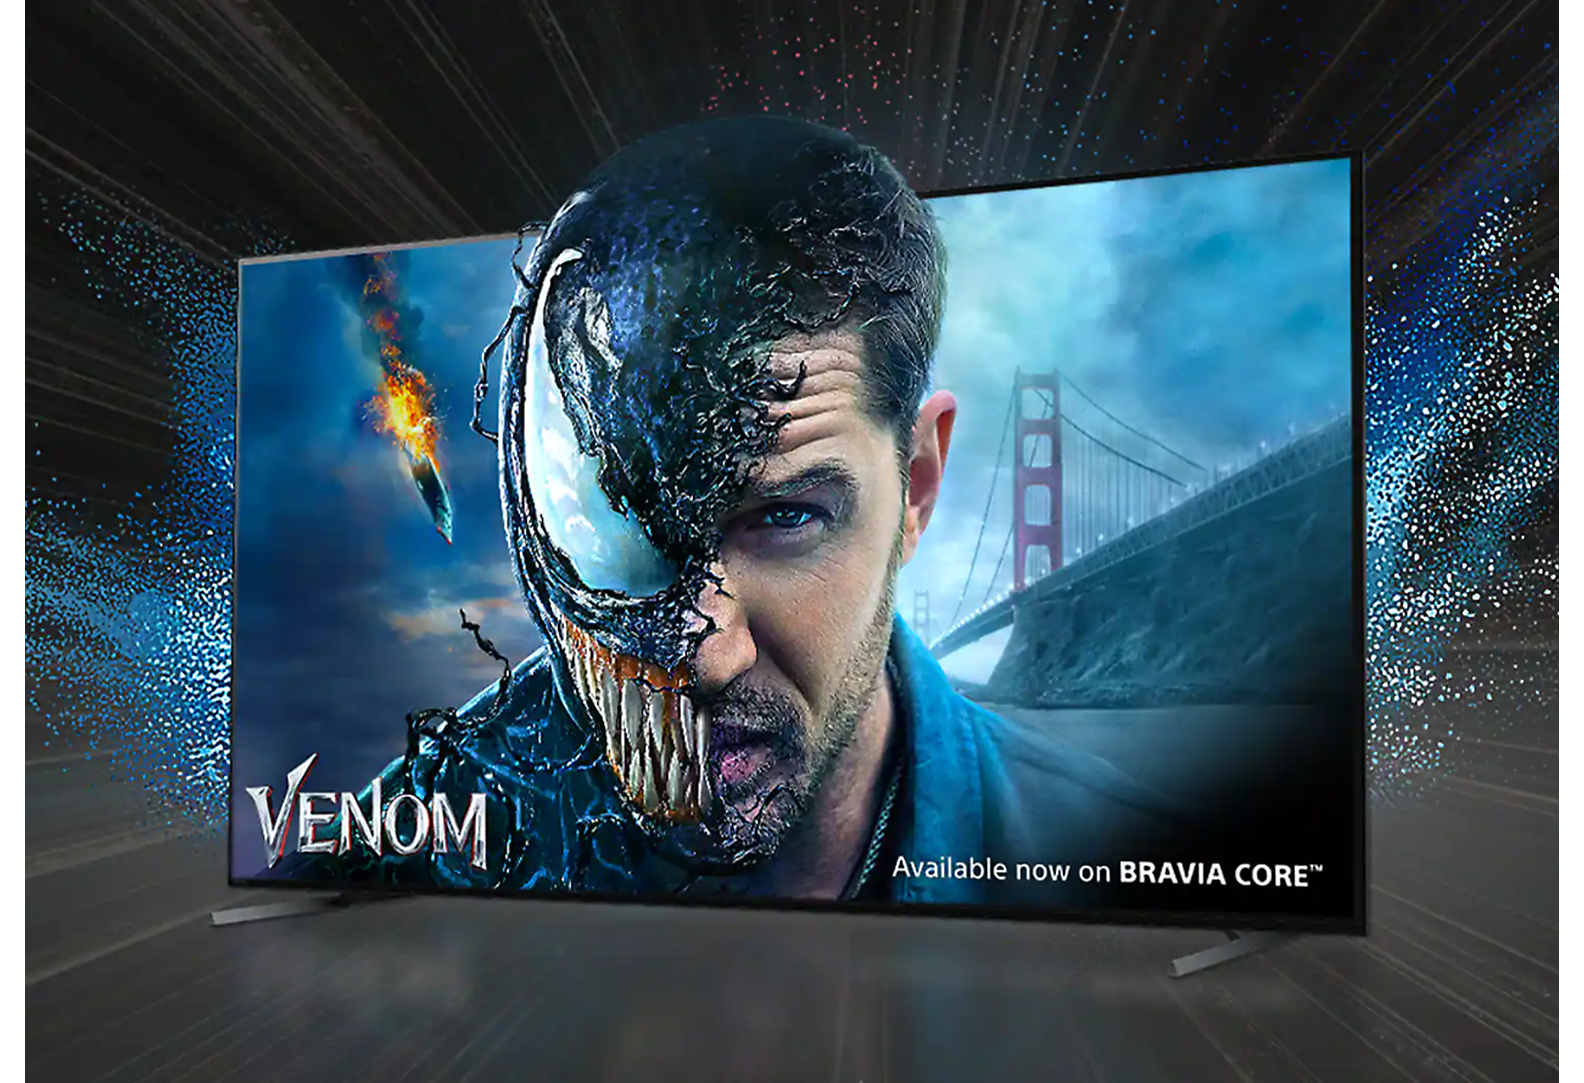 Televizor BRAVIA s prizorom iz filma Venom na zaslonu